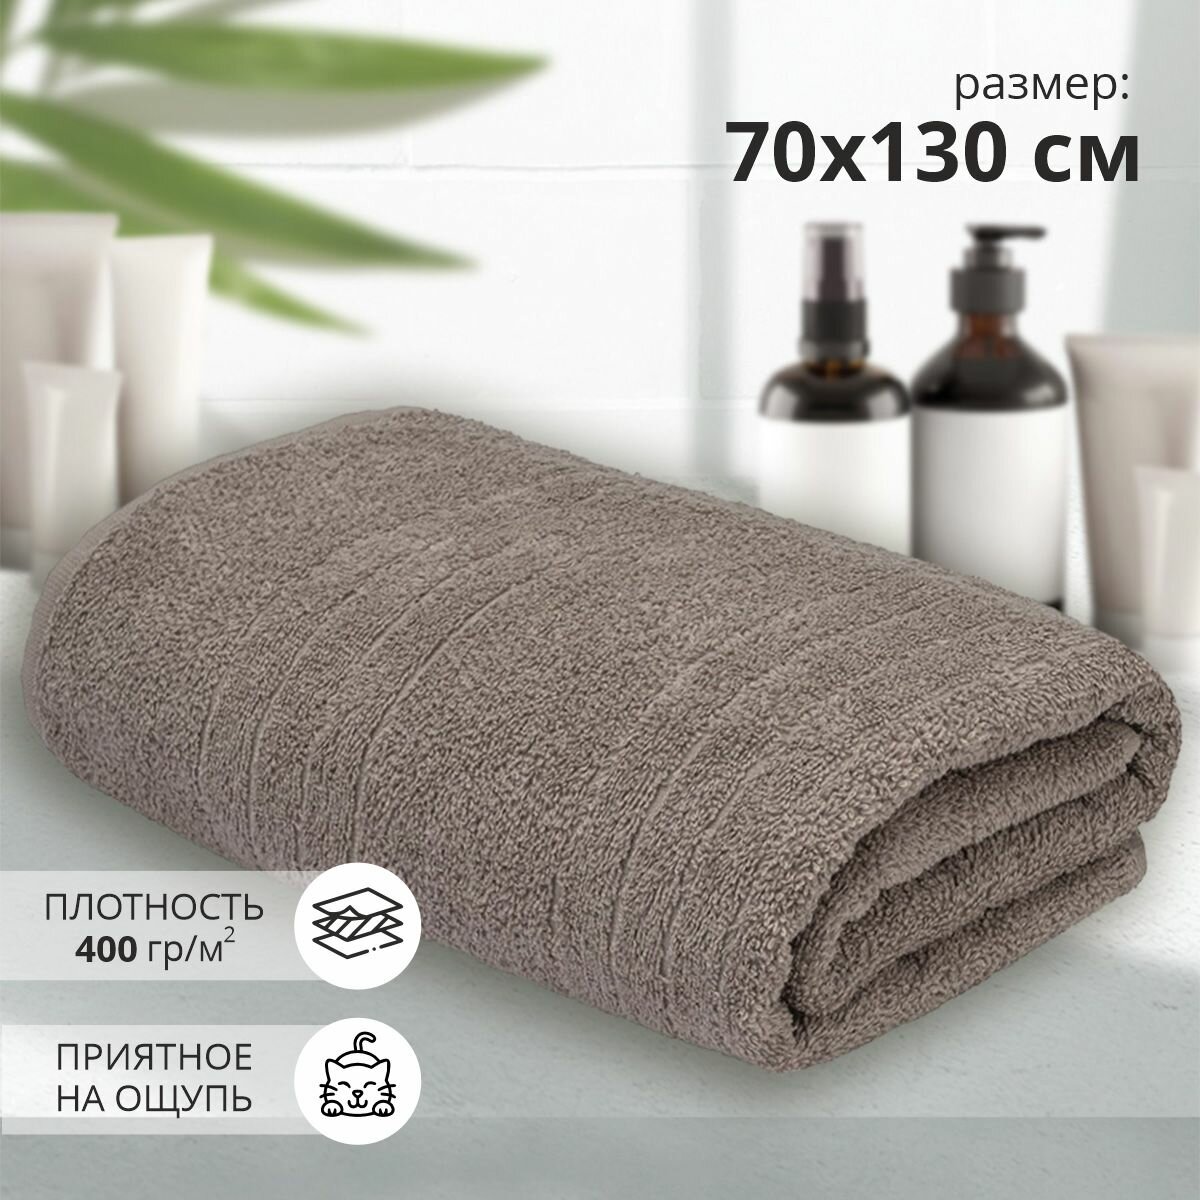 Махровое банное полотенце Гелир 70х130 см /бежевый/ плотность 400 гр/кв. м.